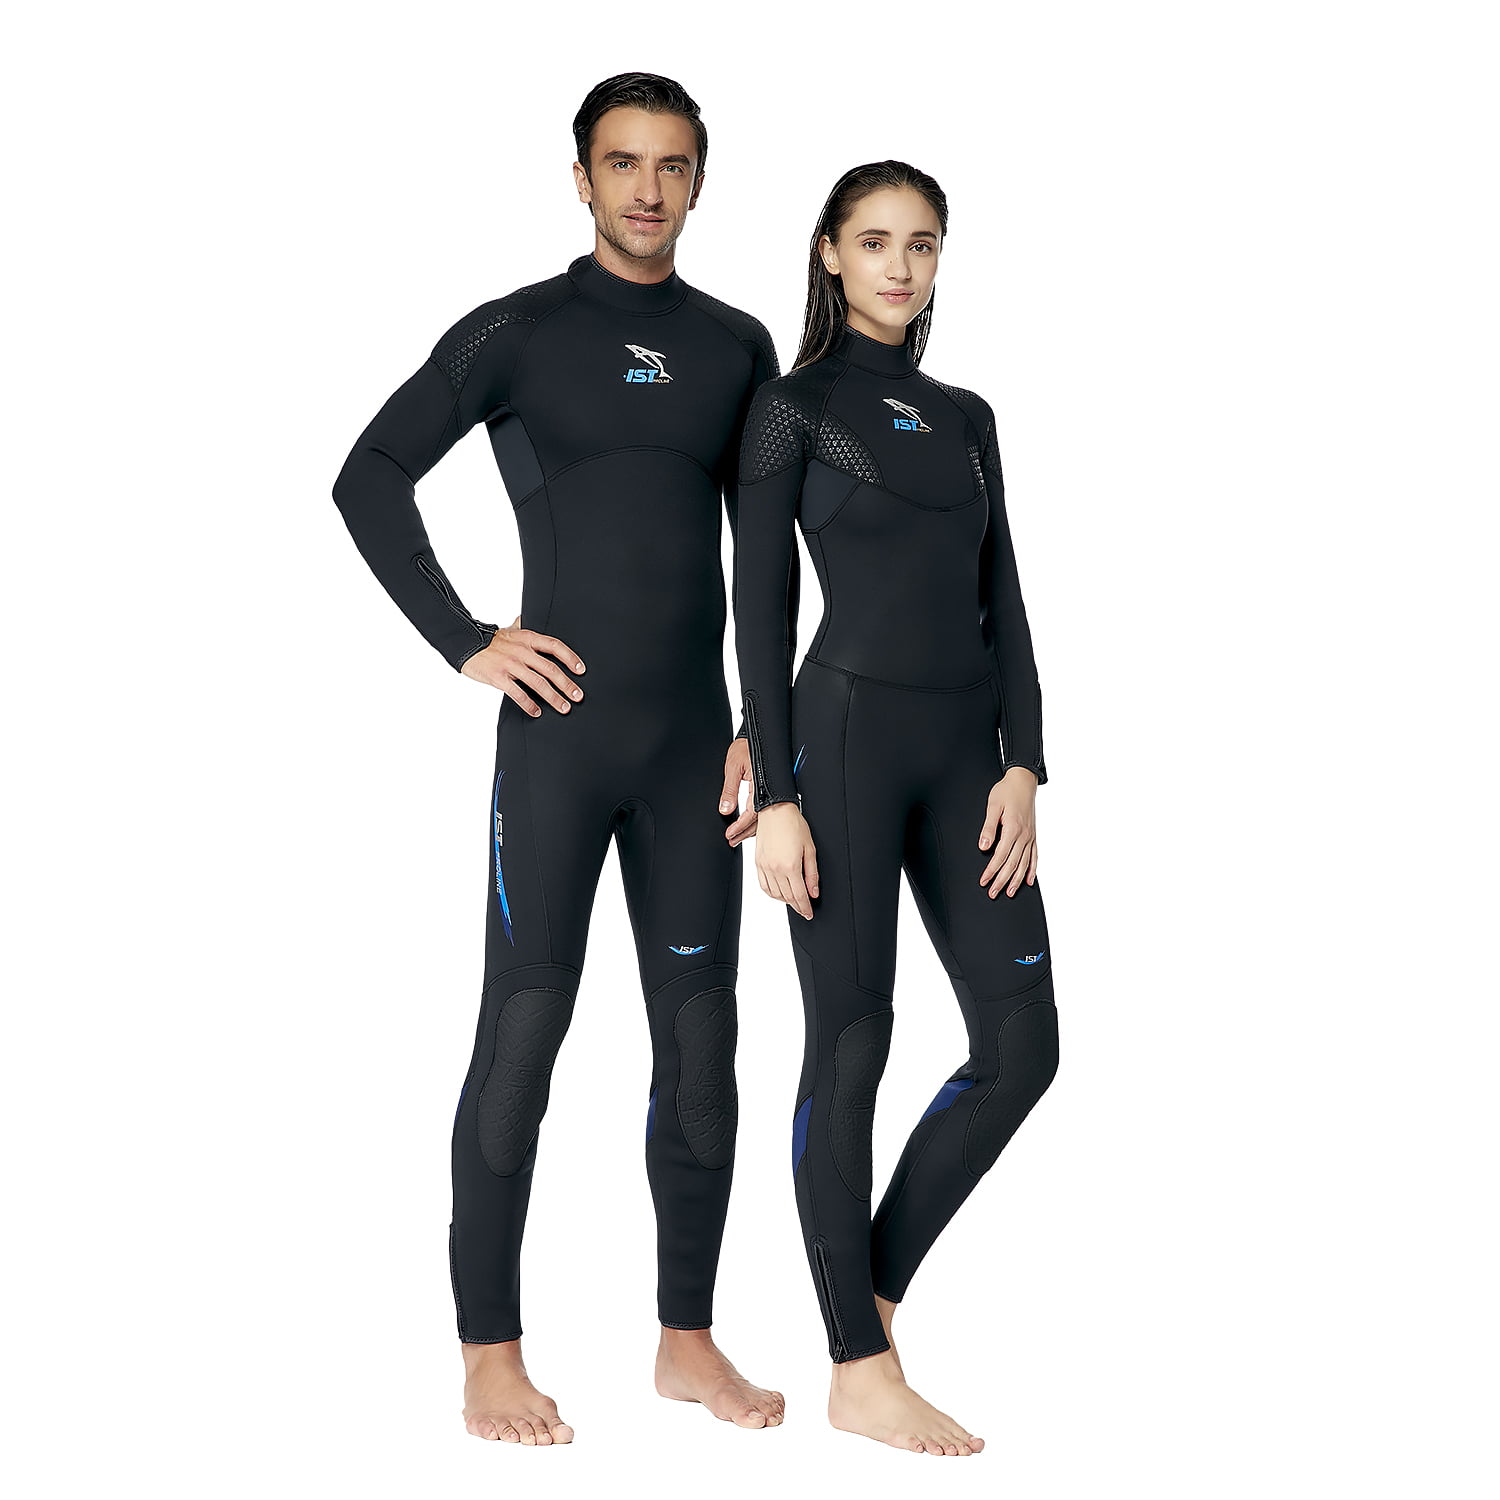 O'Neill Reactor Kids Full Body 3mm/2mm Neoprene Wetsuit Surf Scuba Snorkel 